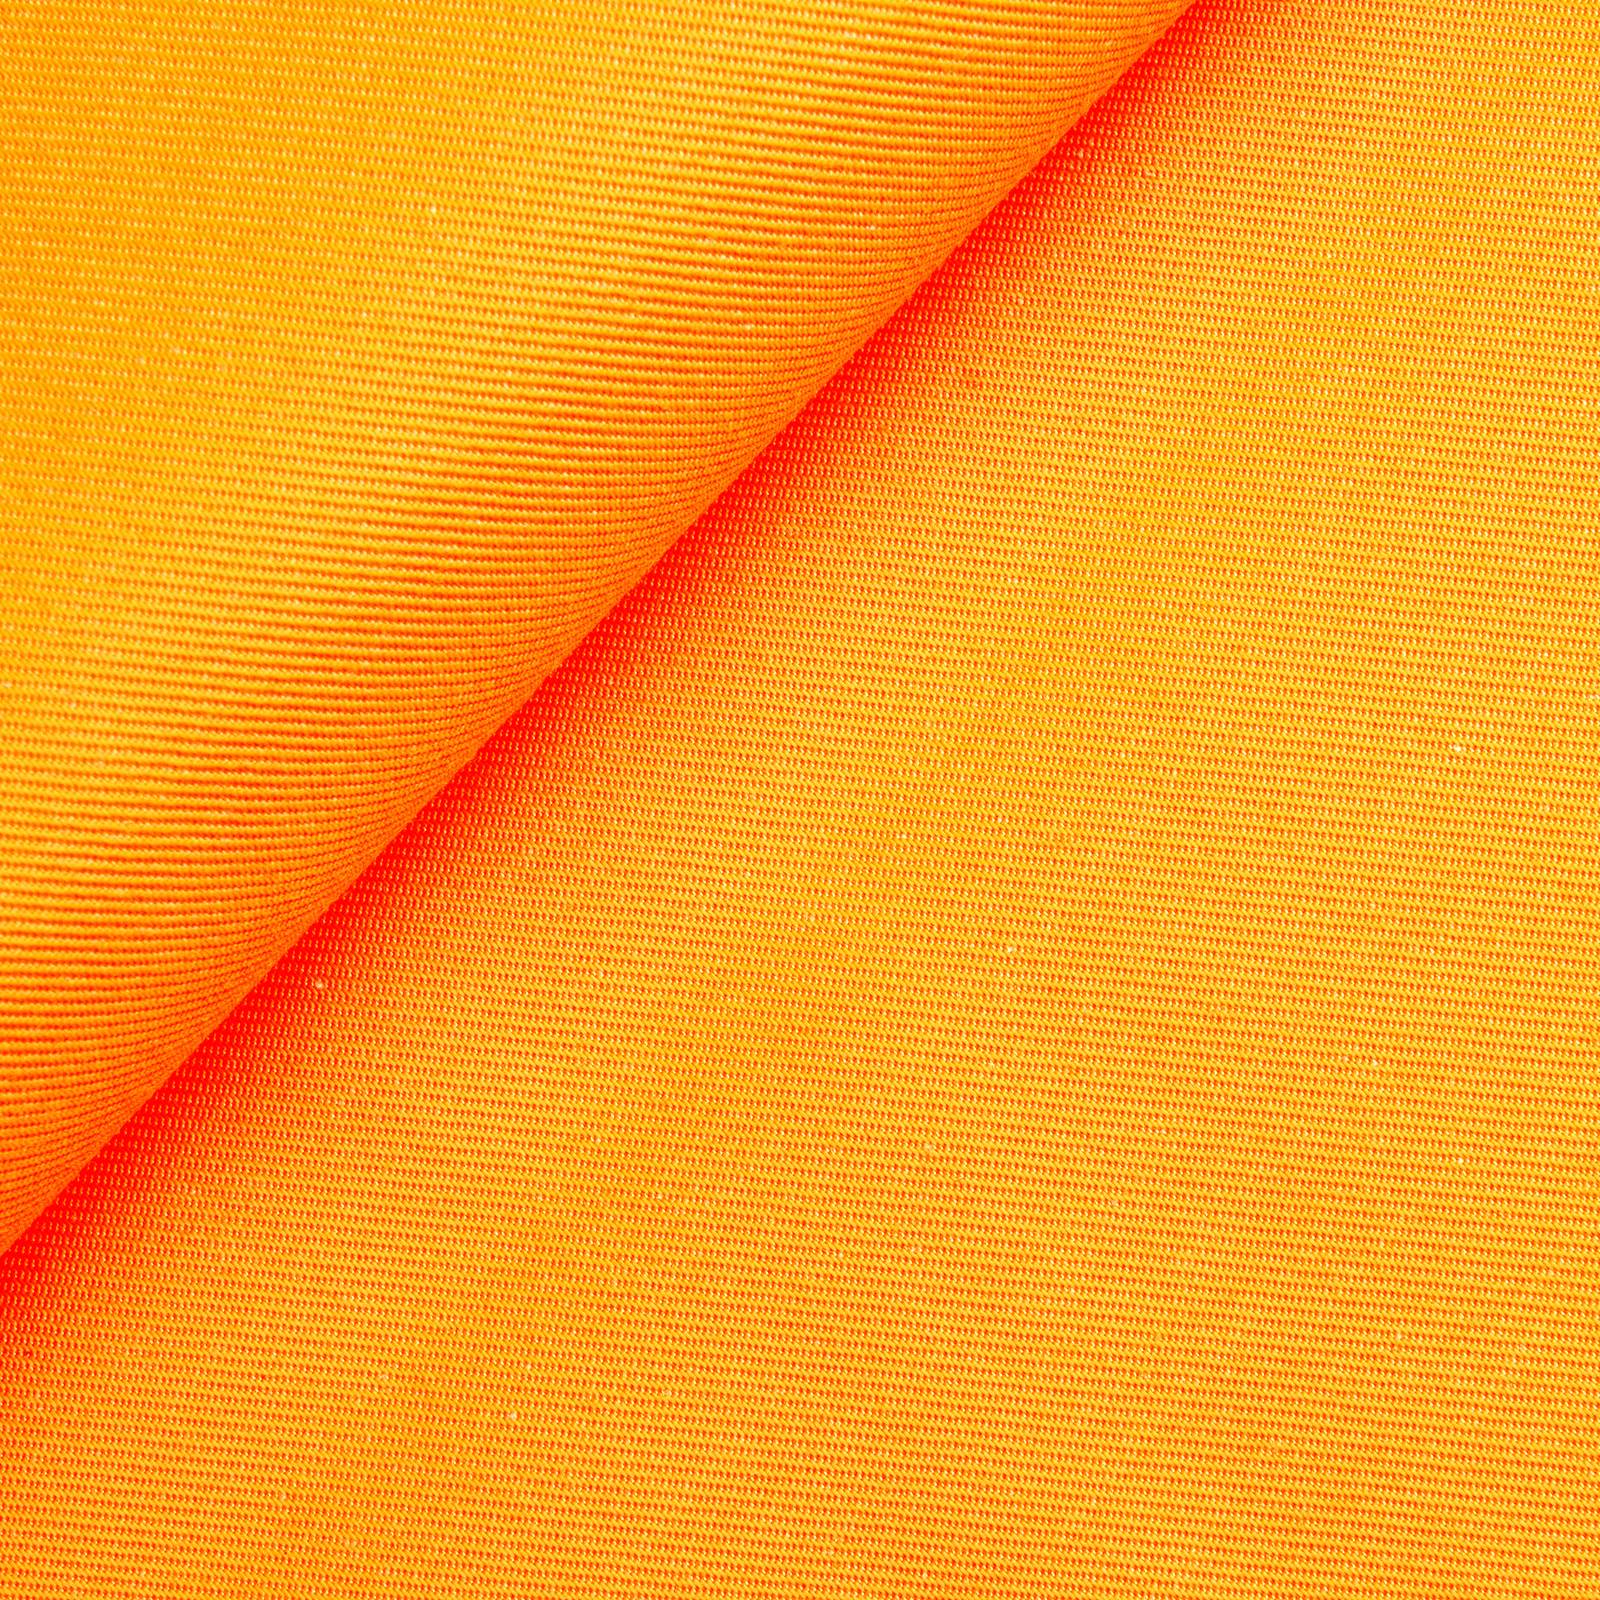 Köpertex – lysende farger – Neon oransje